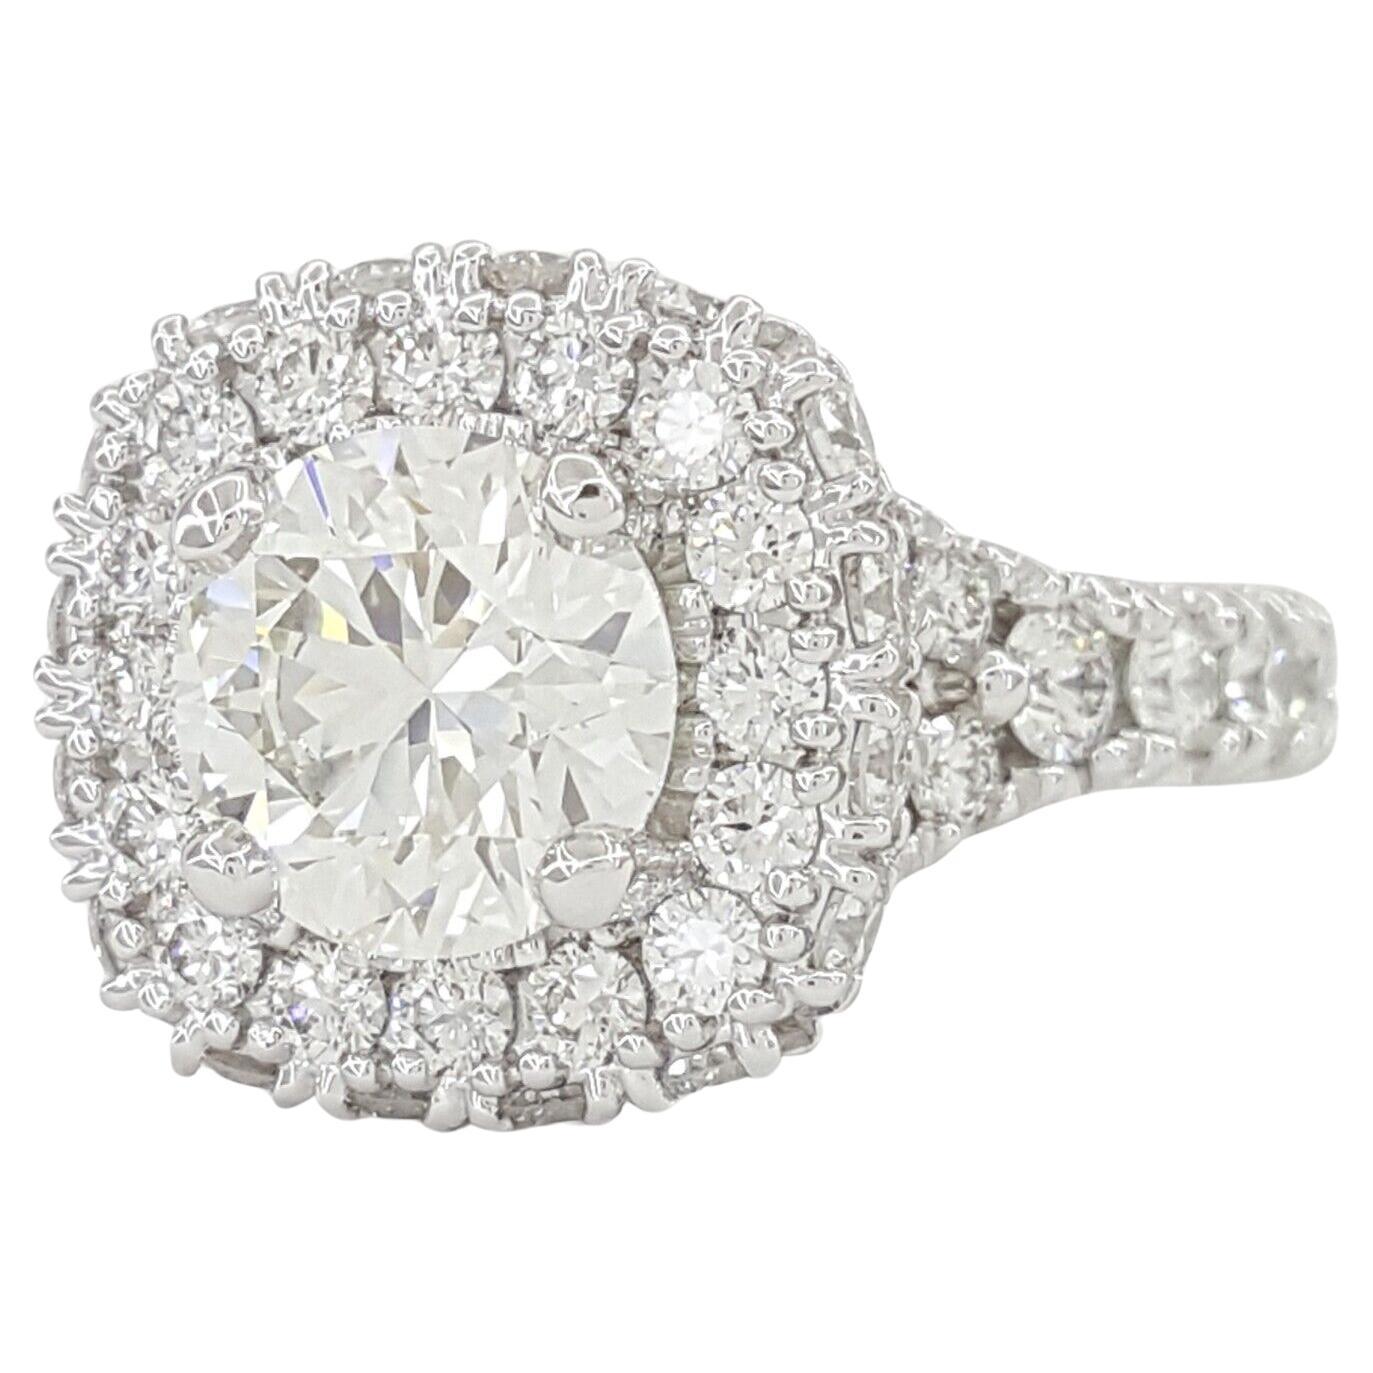 Donnez une nouvelle dimension à votre demande en mariage avec cette magnifique bague de fiançailles certifiée GIA de 2,01 CT de diamants ronds avec halo, réalisée dans un luxueux platine. En son cœur brille un magnifique diamant rond de taille